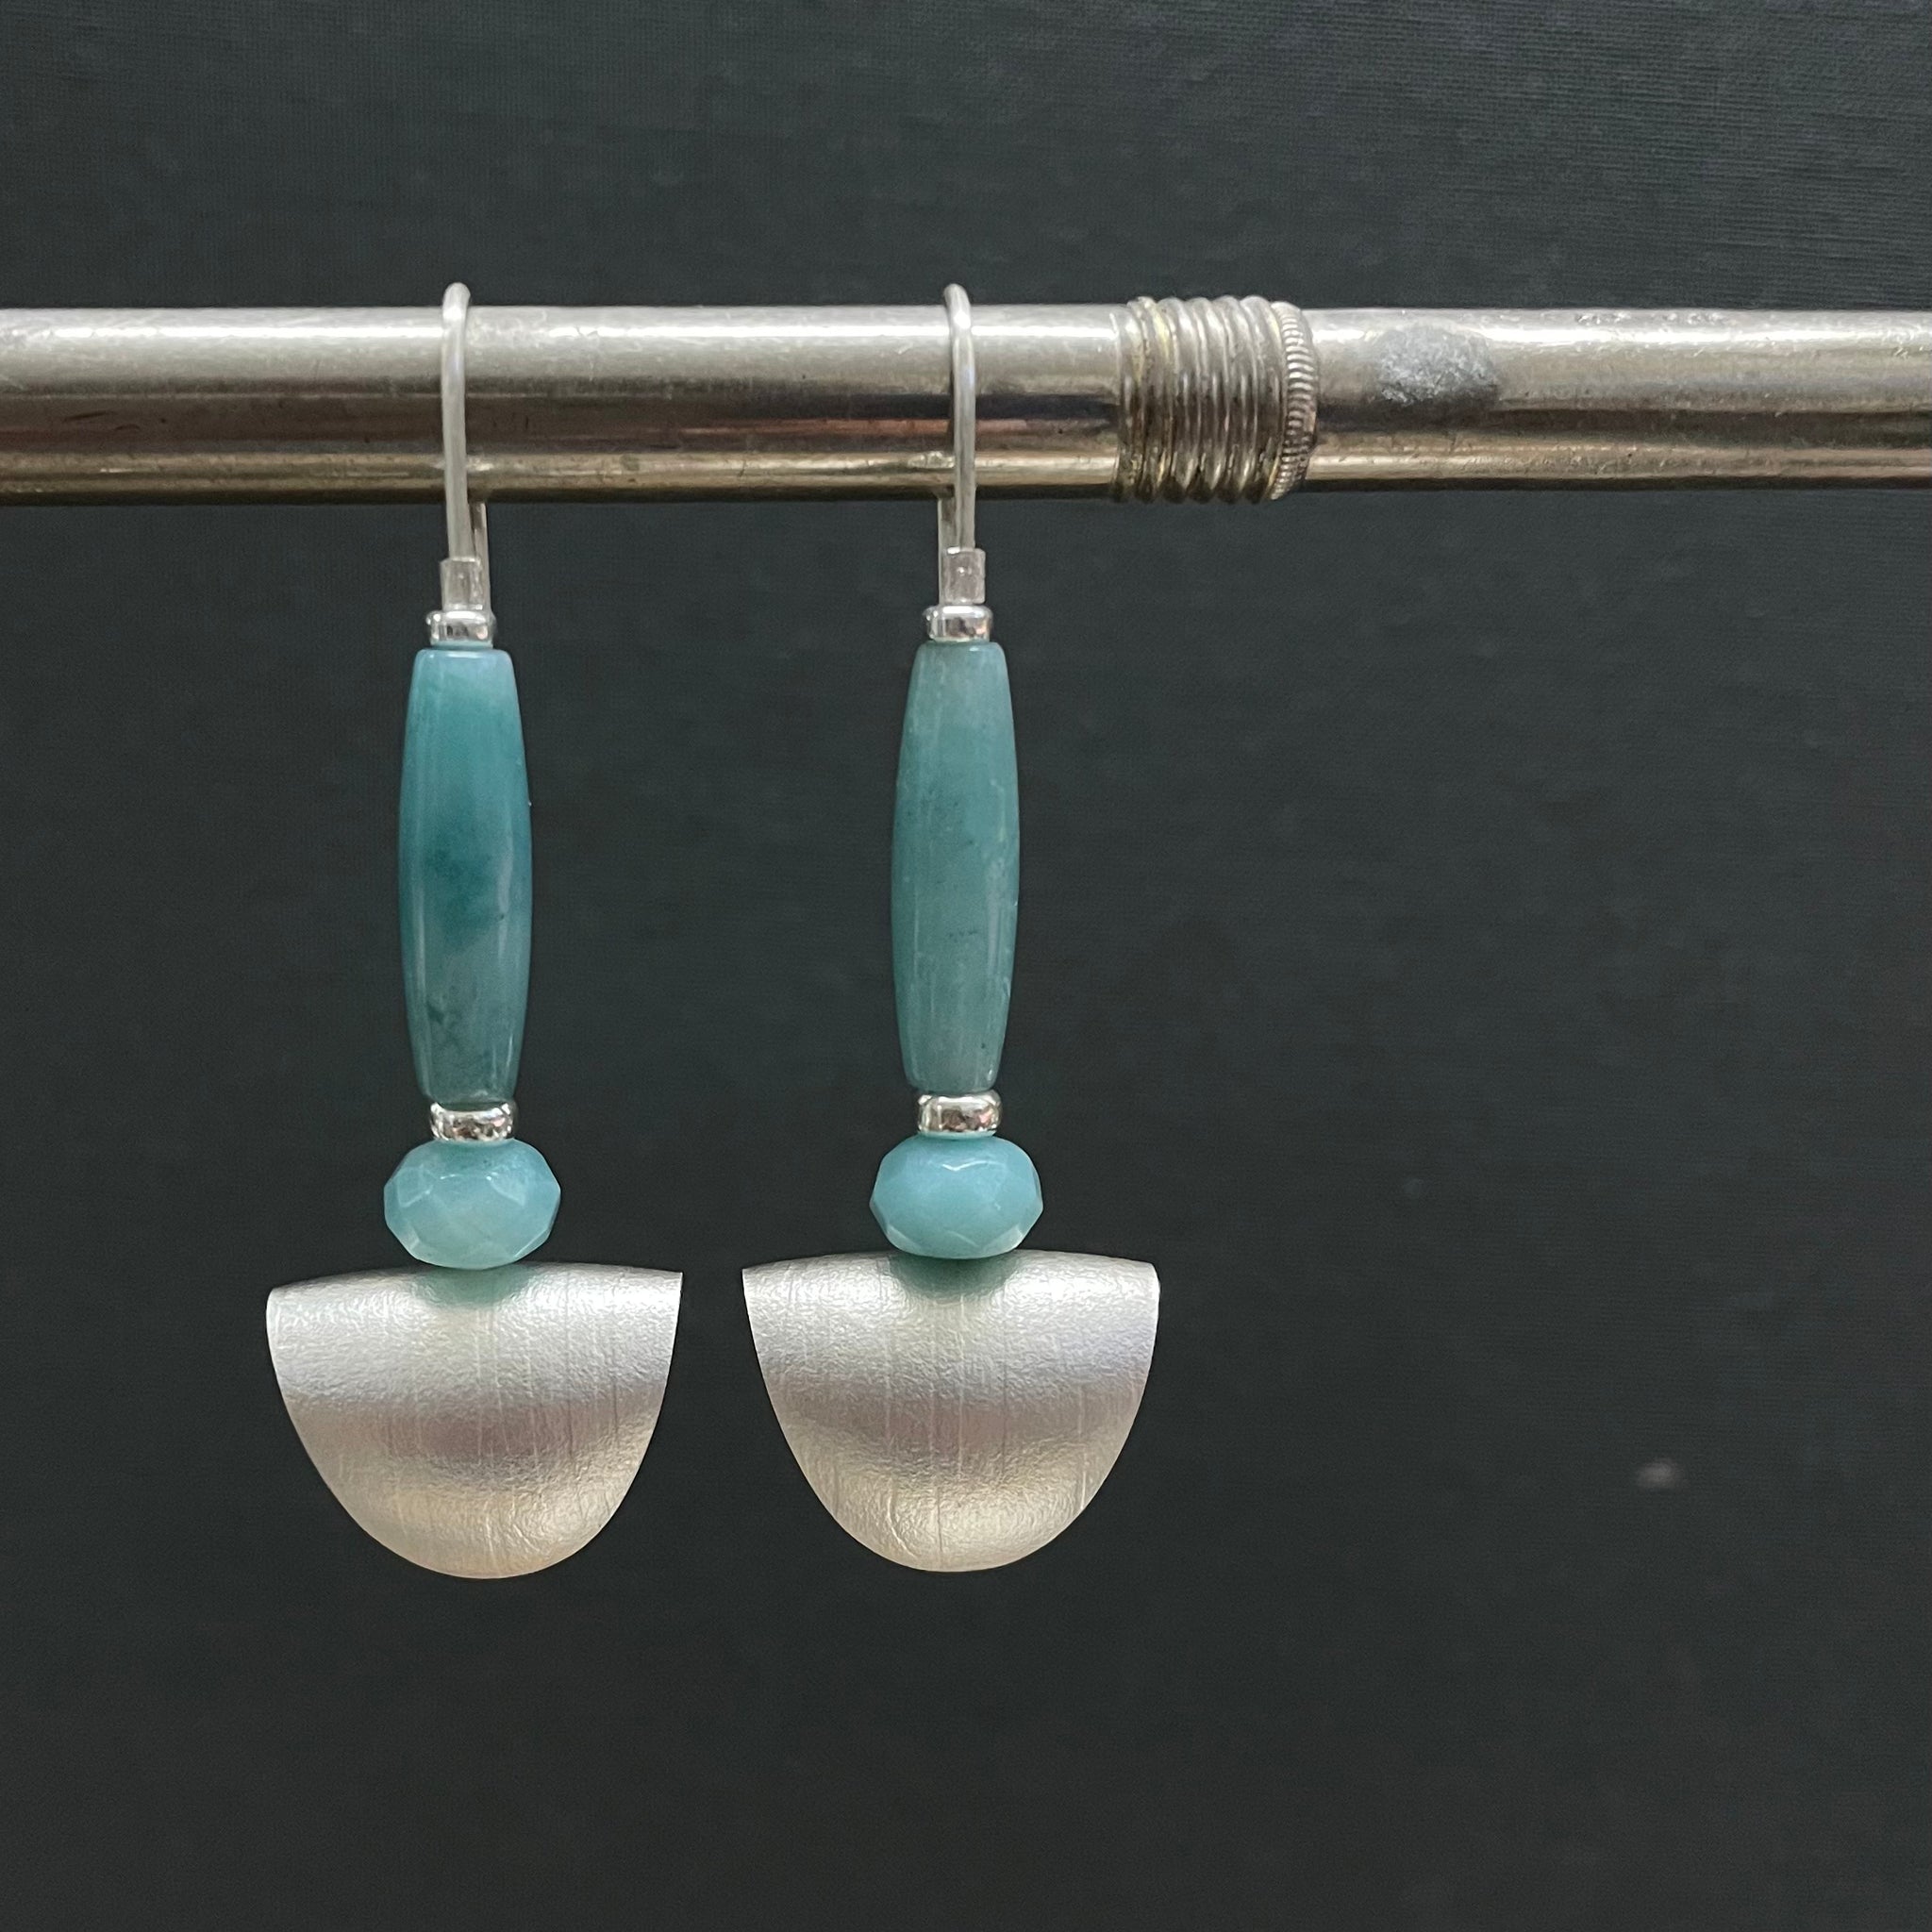 Moon pillow earrings by Kate Wilkinson